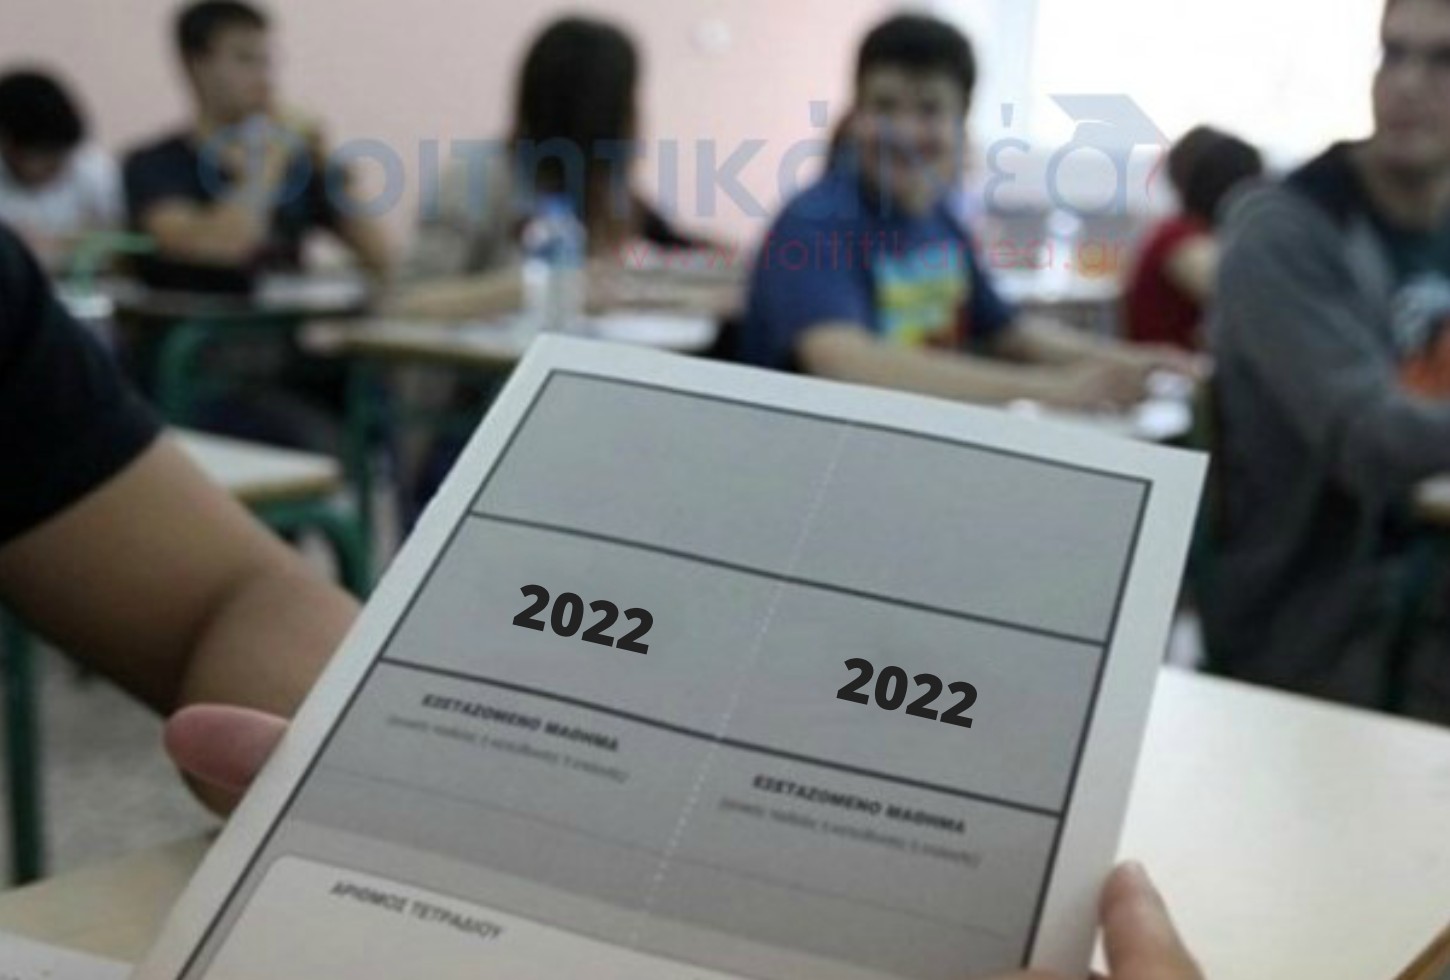  Πανελλήνιες 2022: Το Νοέμβριο 2021 οι προκαταρκτικές εξετάσεις για Στρατιωτικές & Αστυνομικές Σχολές 